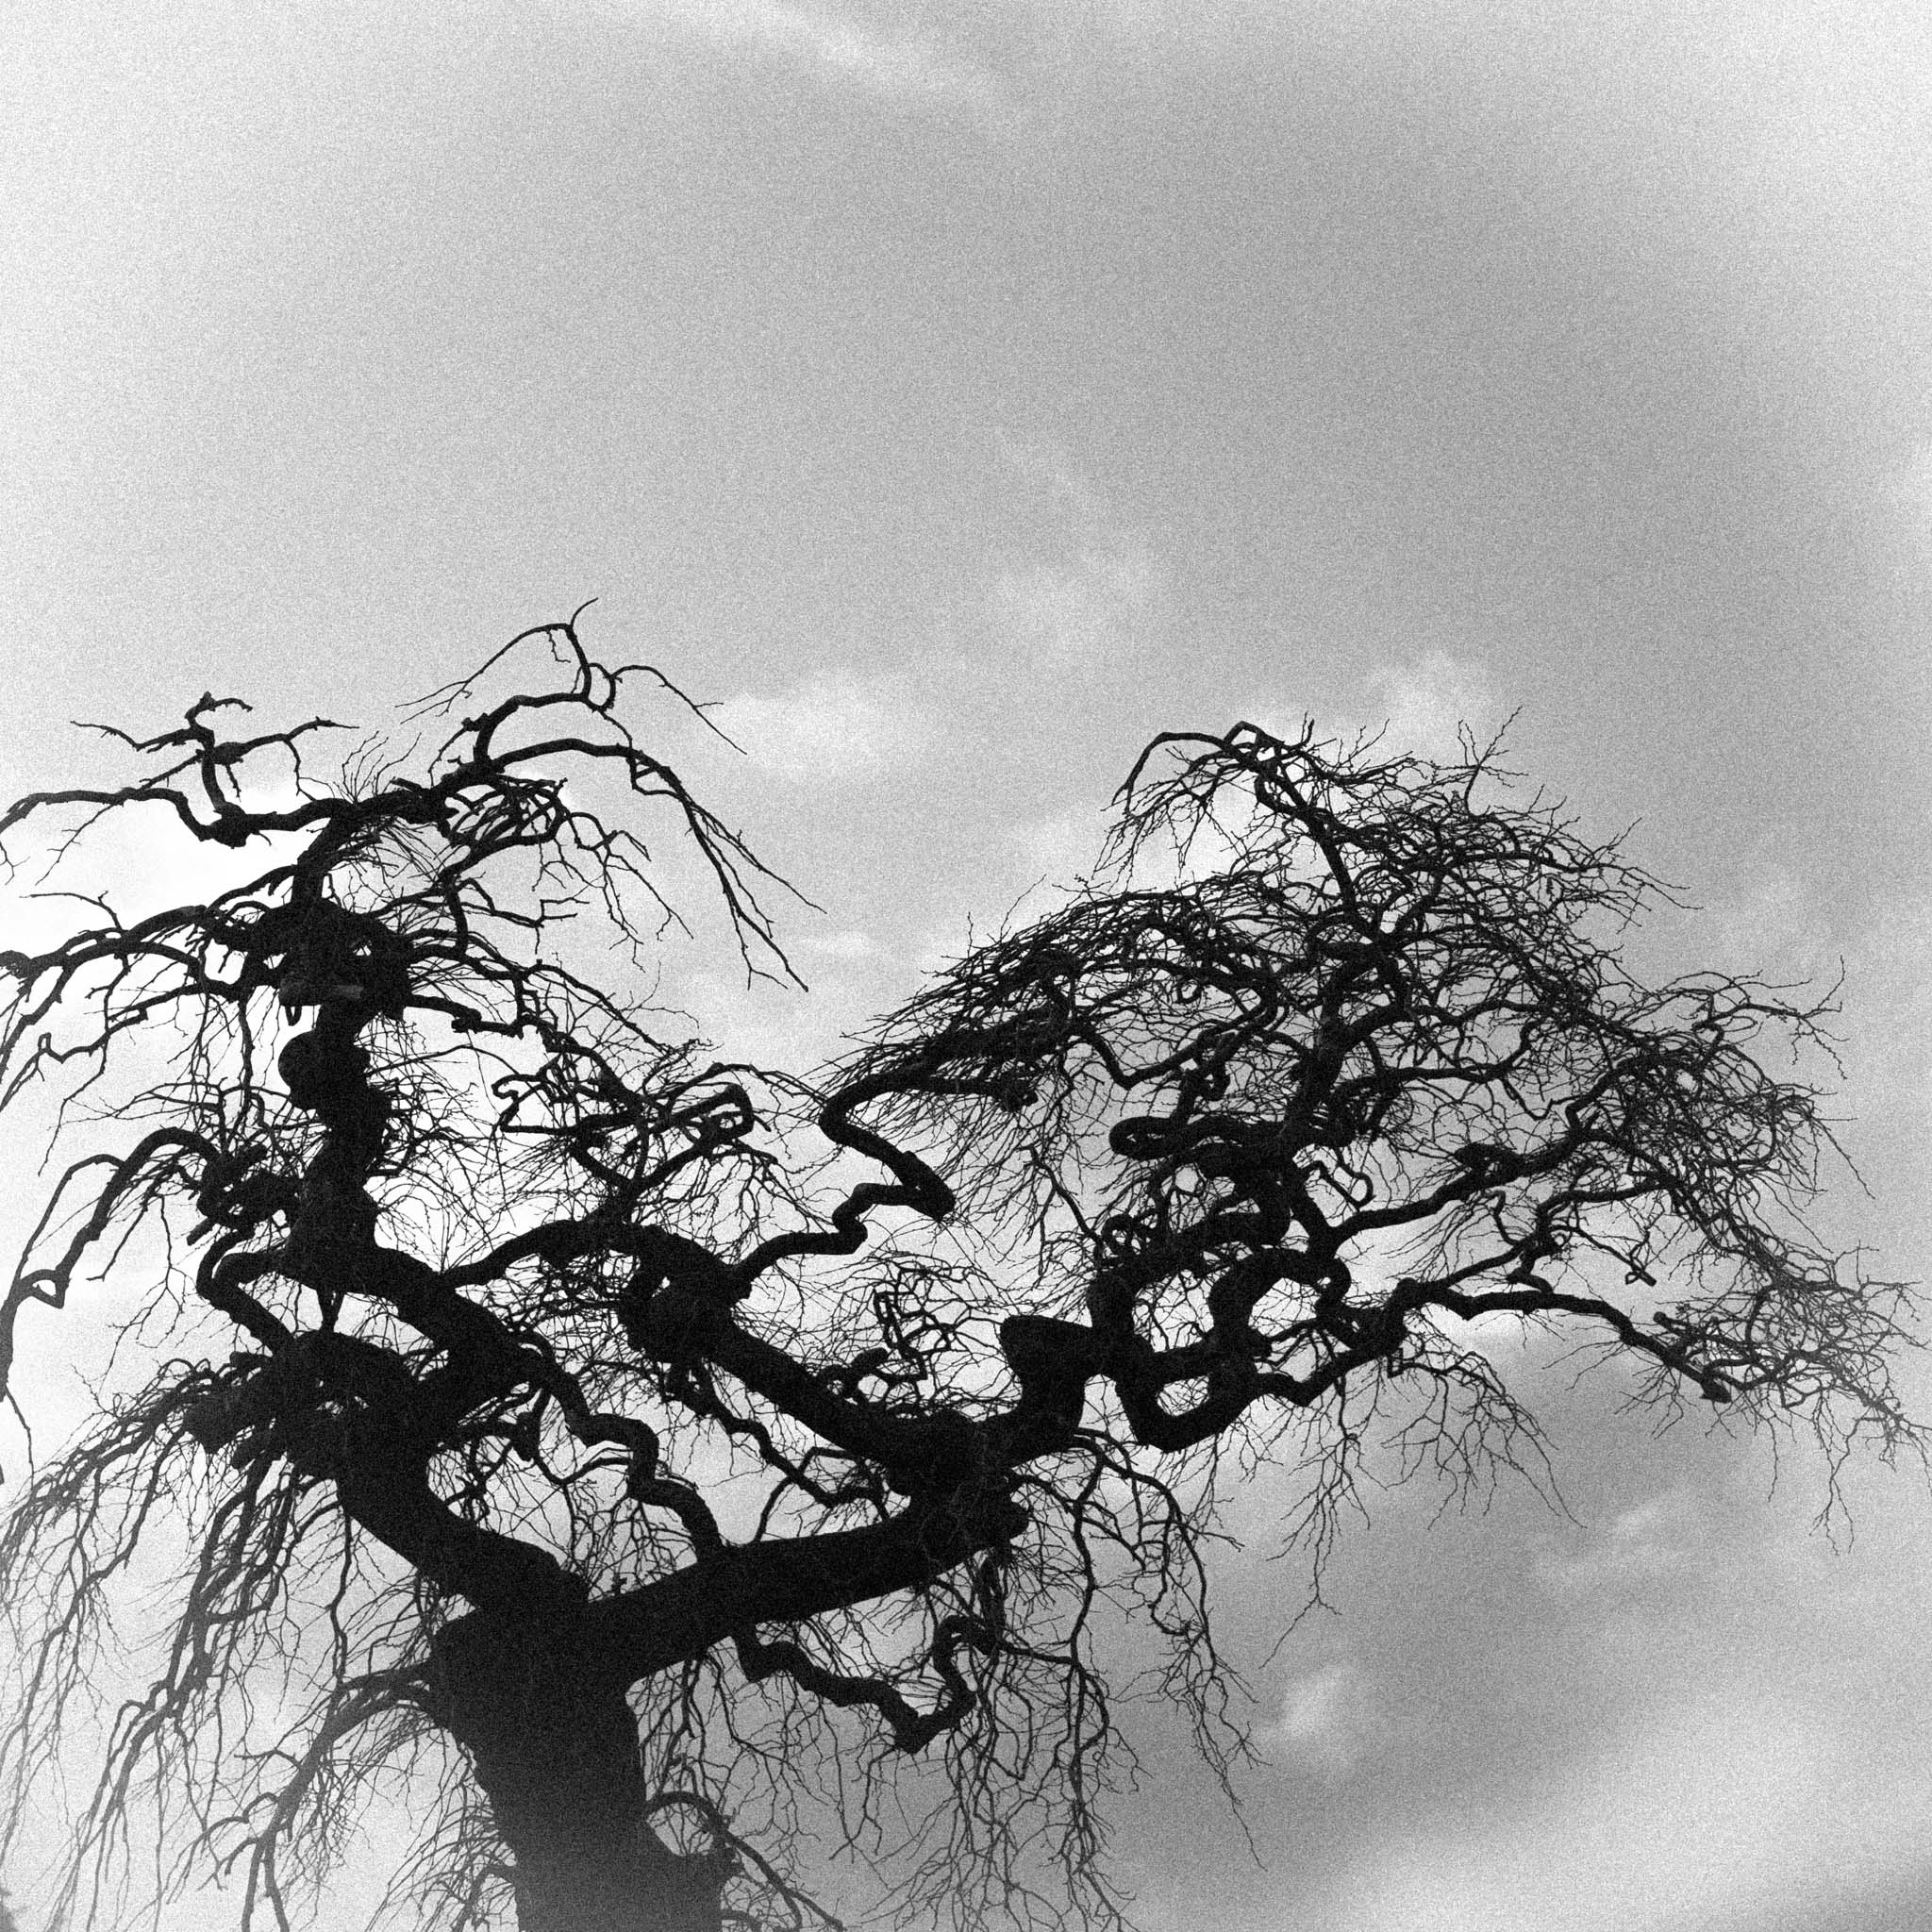 Veggbilder | Nervøst tre | A nervous tree | fotokunst kunstfoto foto kunst bilder aluminiumsplate wall art